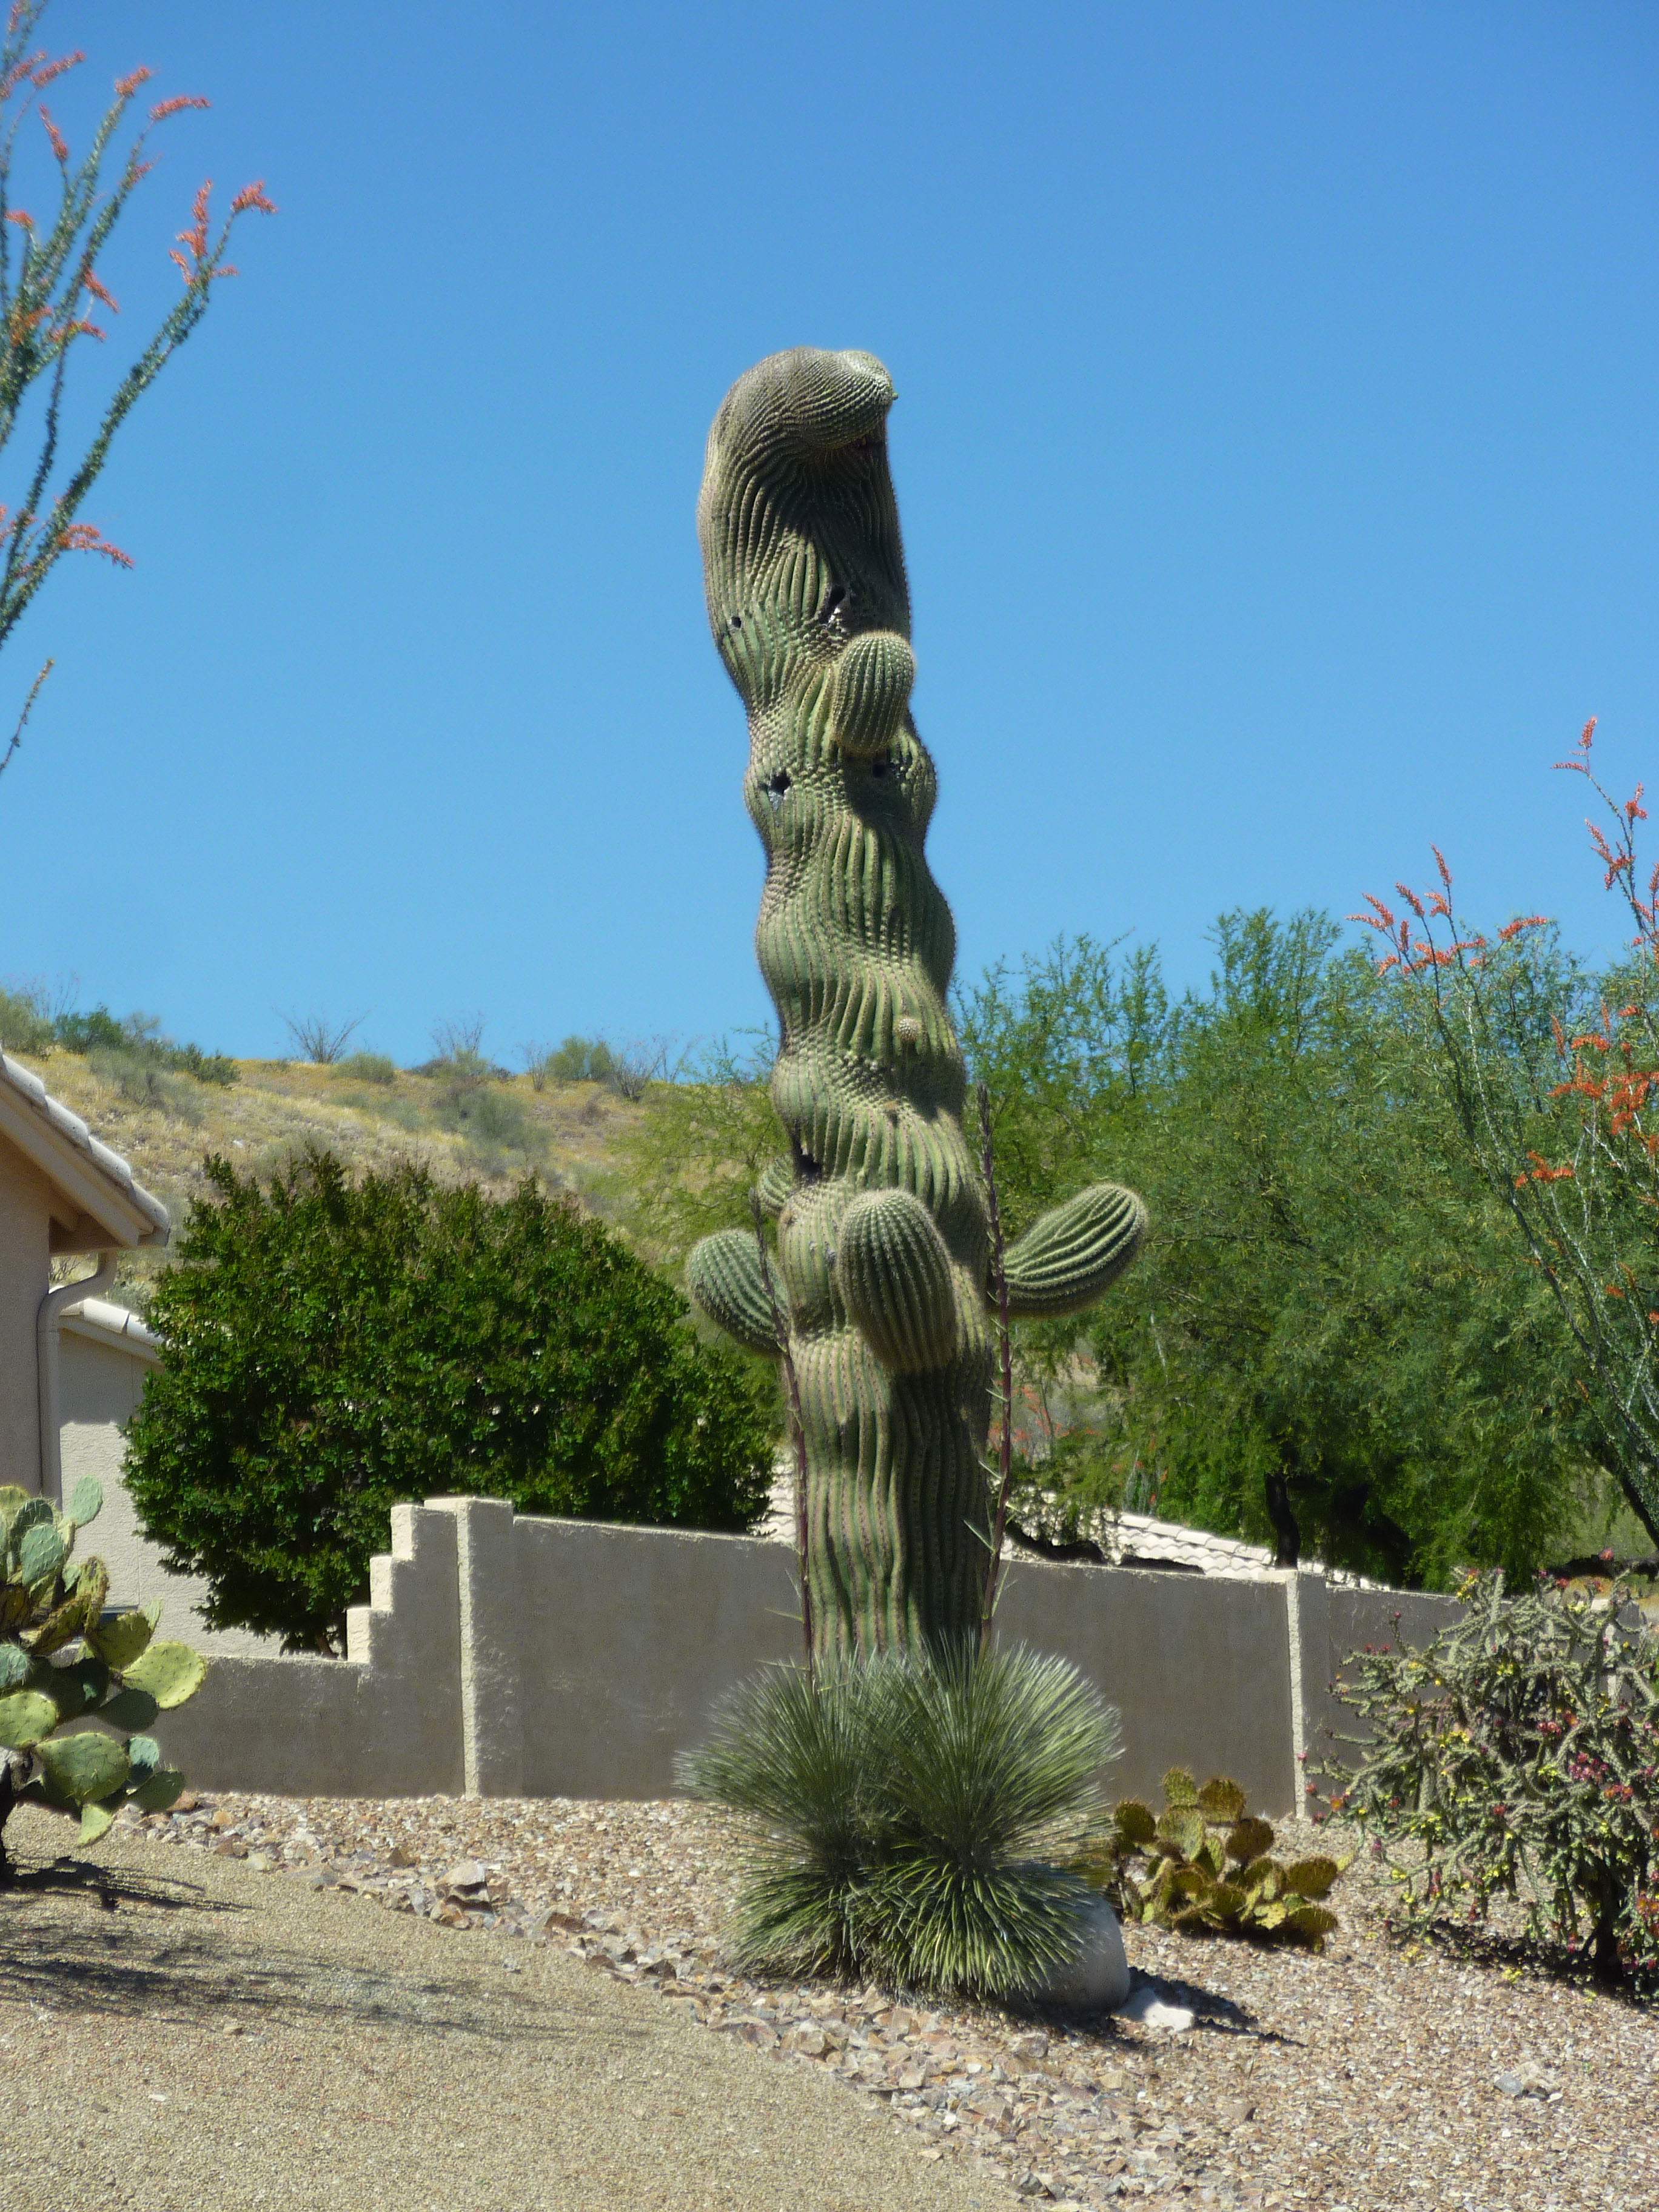 Saguaro Cactus rare          